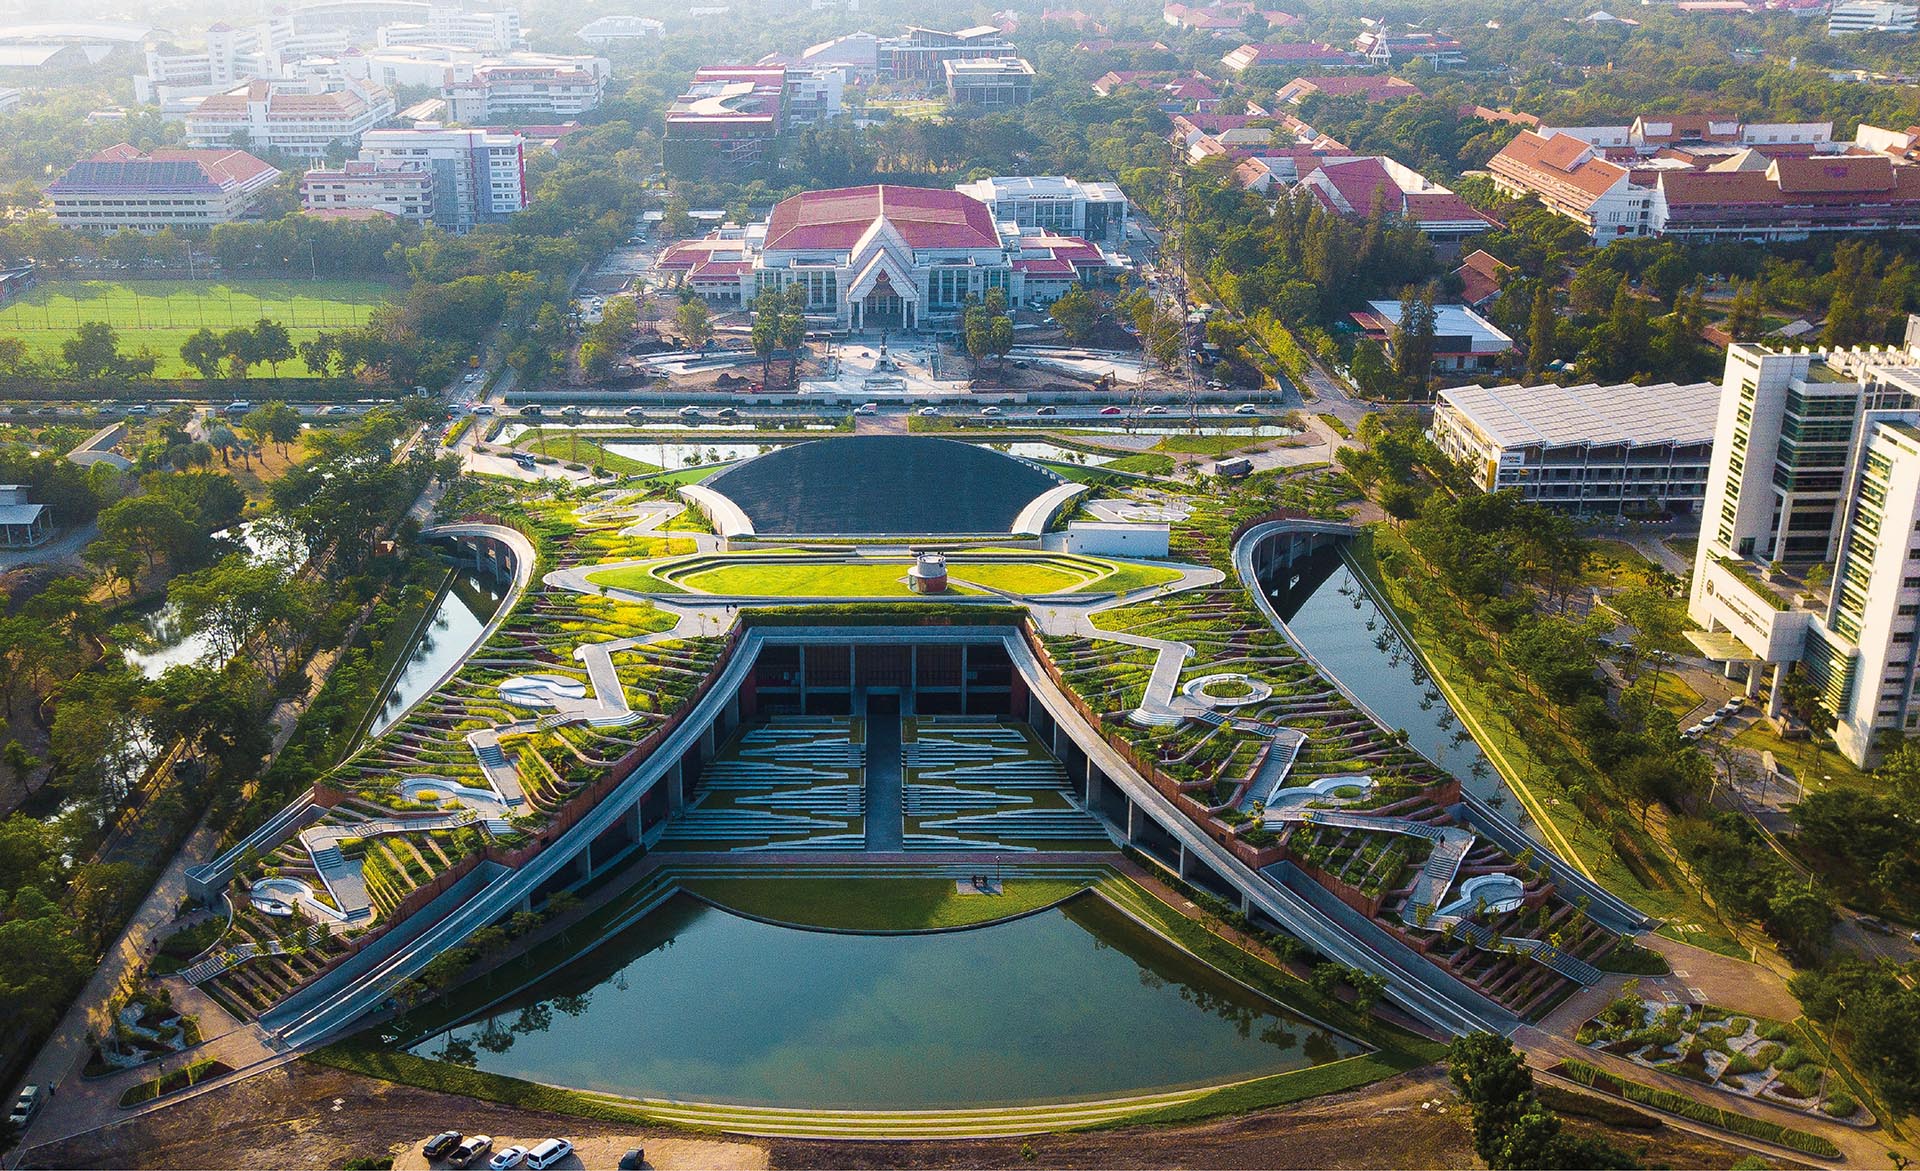 Ландшафтный дизайн террасной крыши создает в Таиланде городскую ферму.